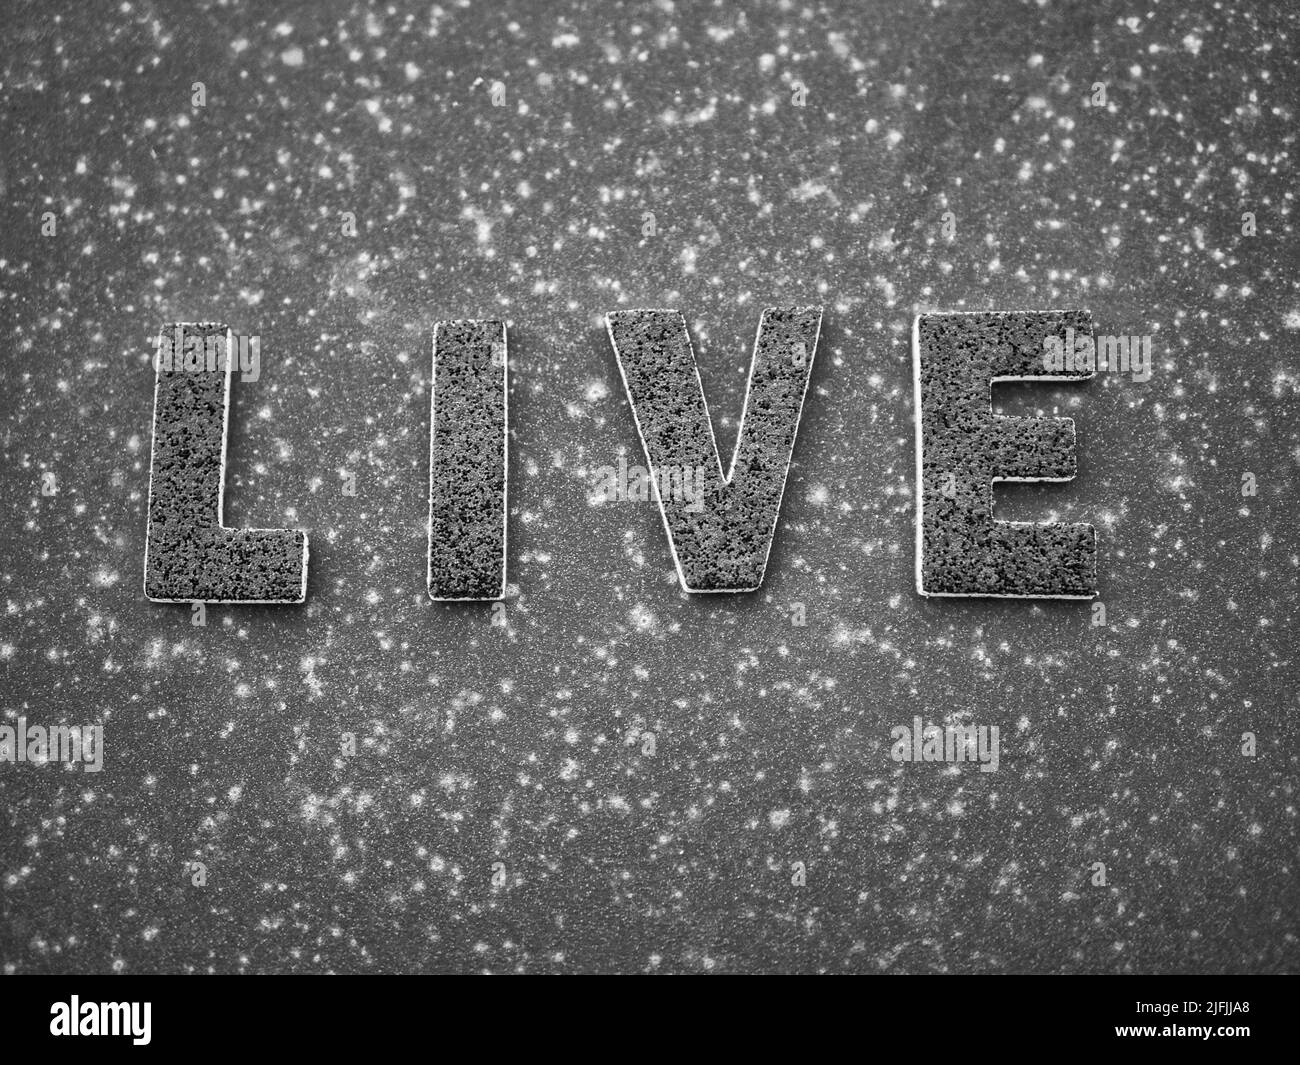 La parola 'Live' in lettere nere su una superficie in metallo arrugginito nero. Foto Stock